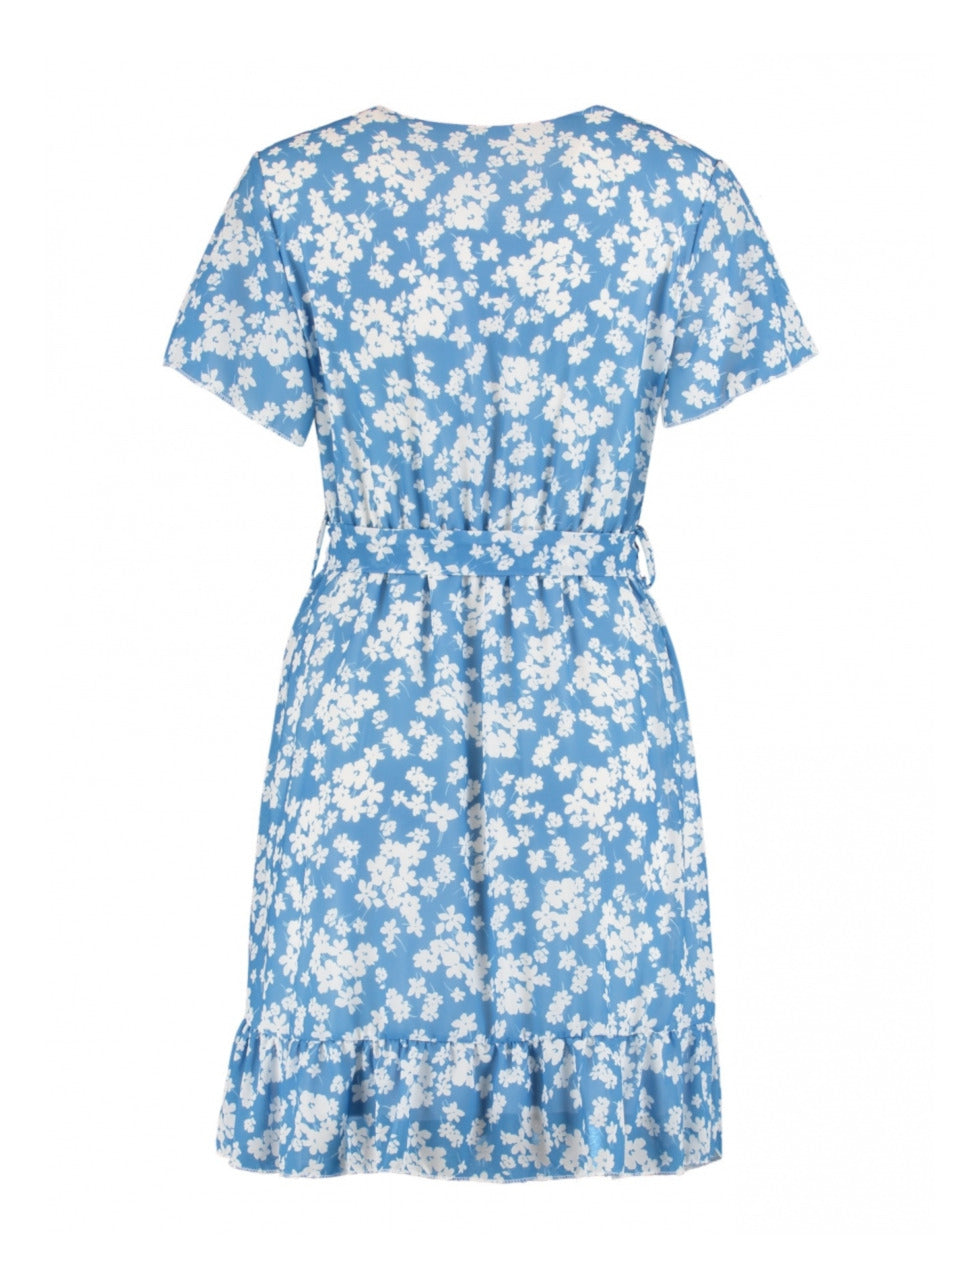 Sophie Summer Blue Floral Wrap Dress